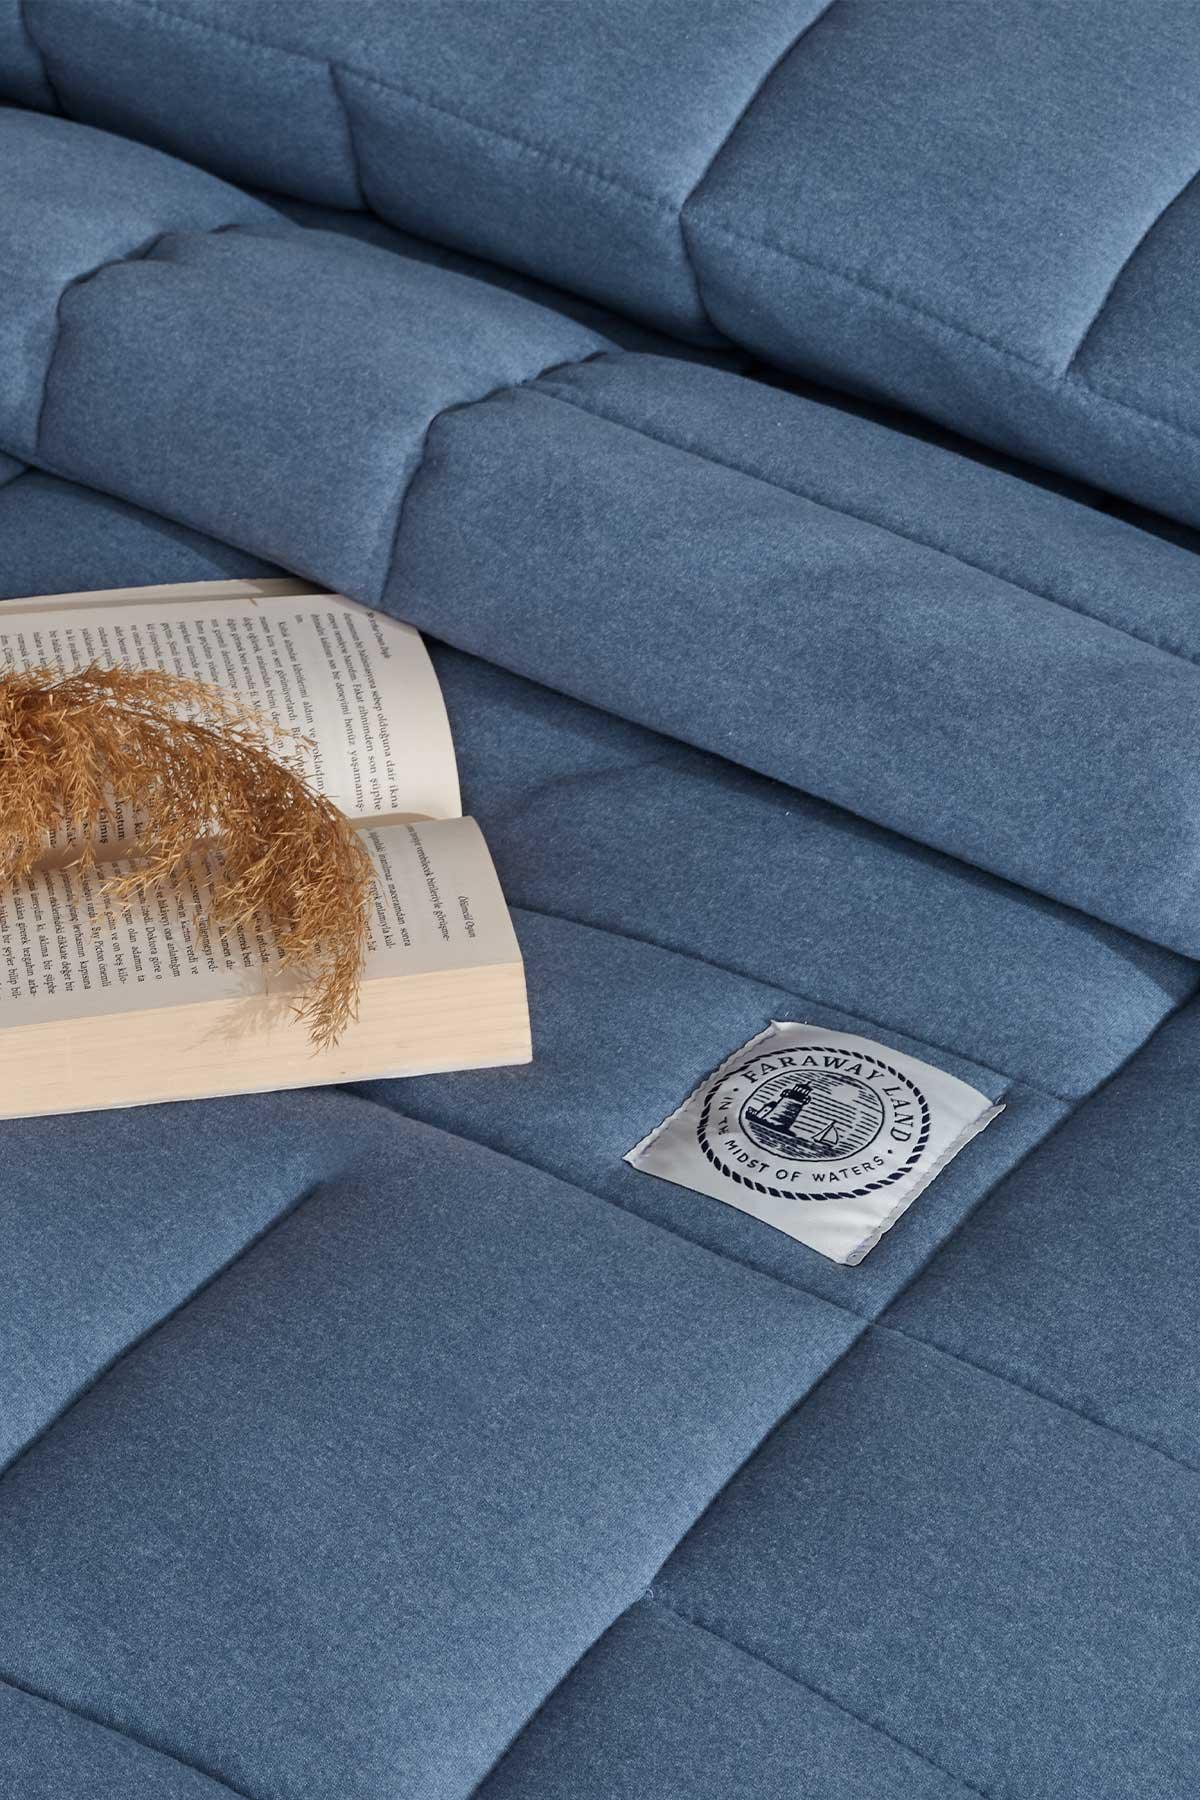 Joyful Comfort Set Modern Uyku Seti Çift Kişilik Mavi - Elart Home